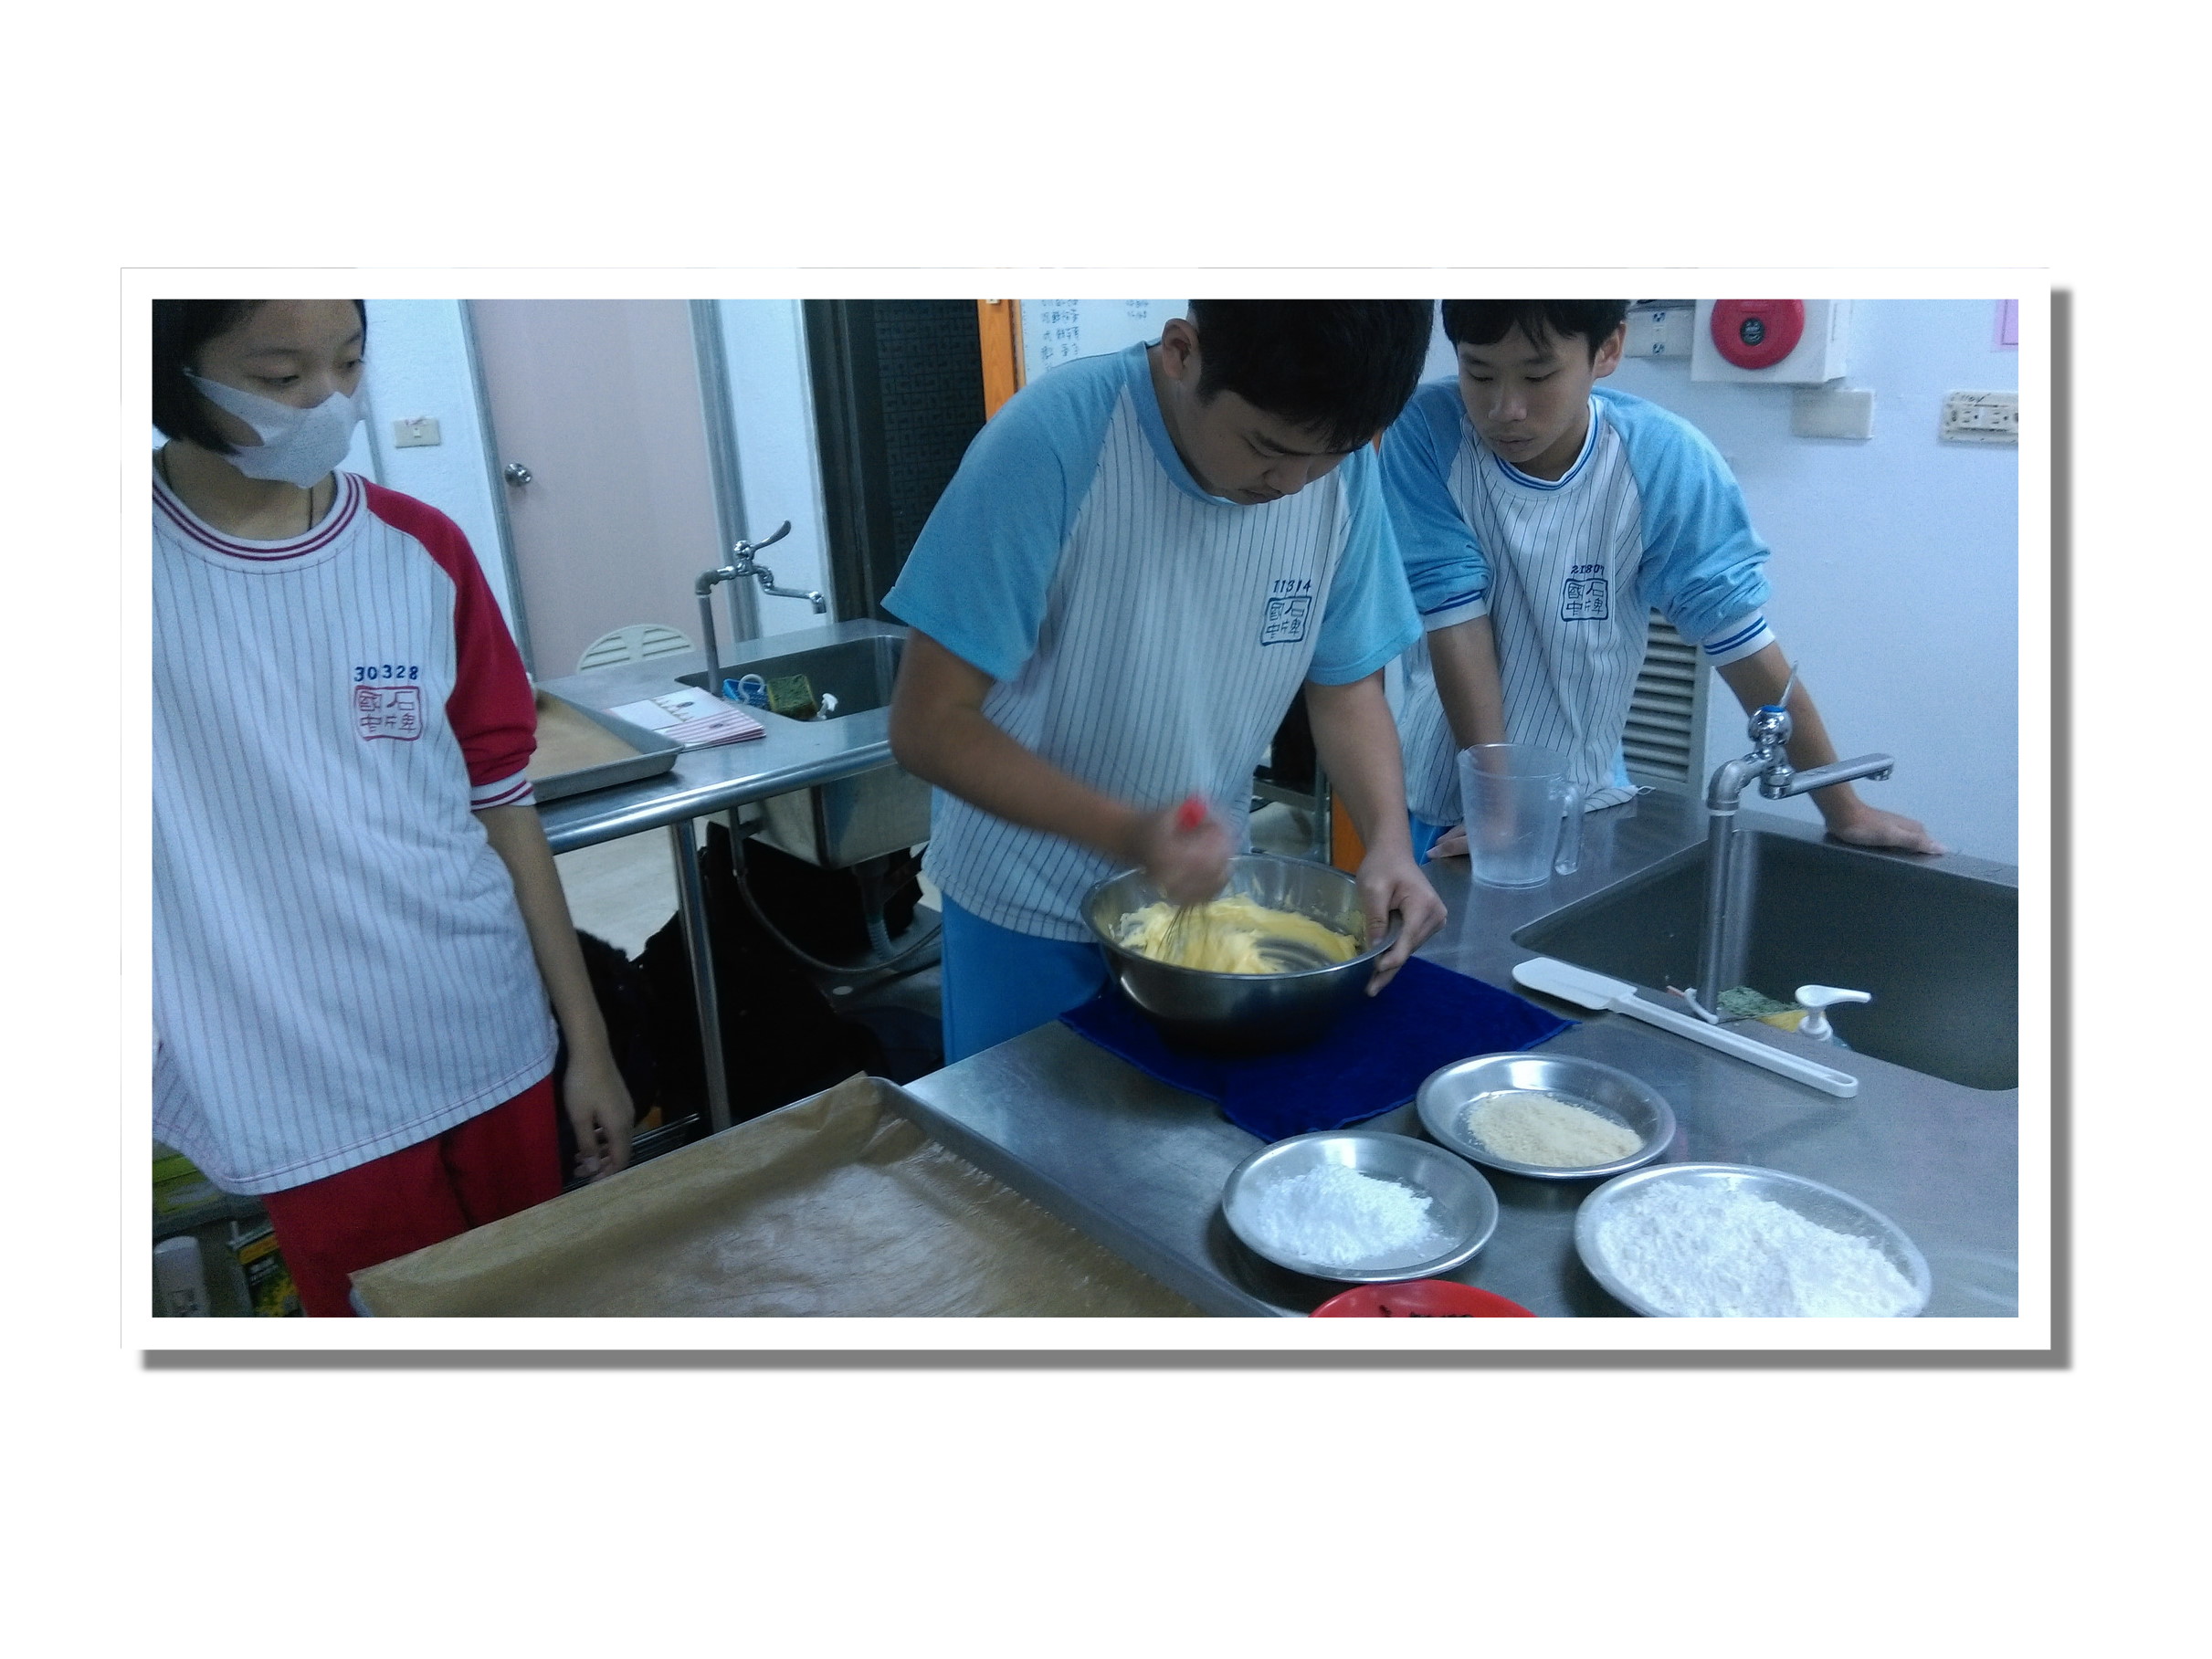 104年寒假國中生職業輔導研習營 1、烘焙課程(麵包.餅乾製作)